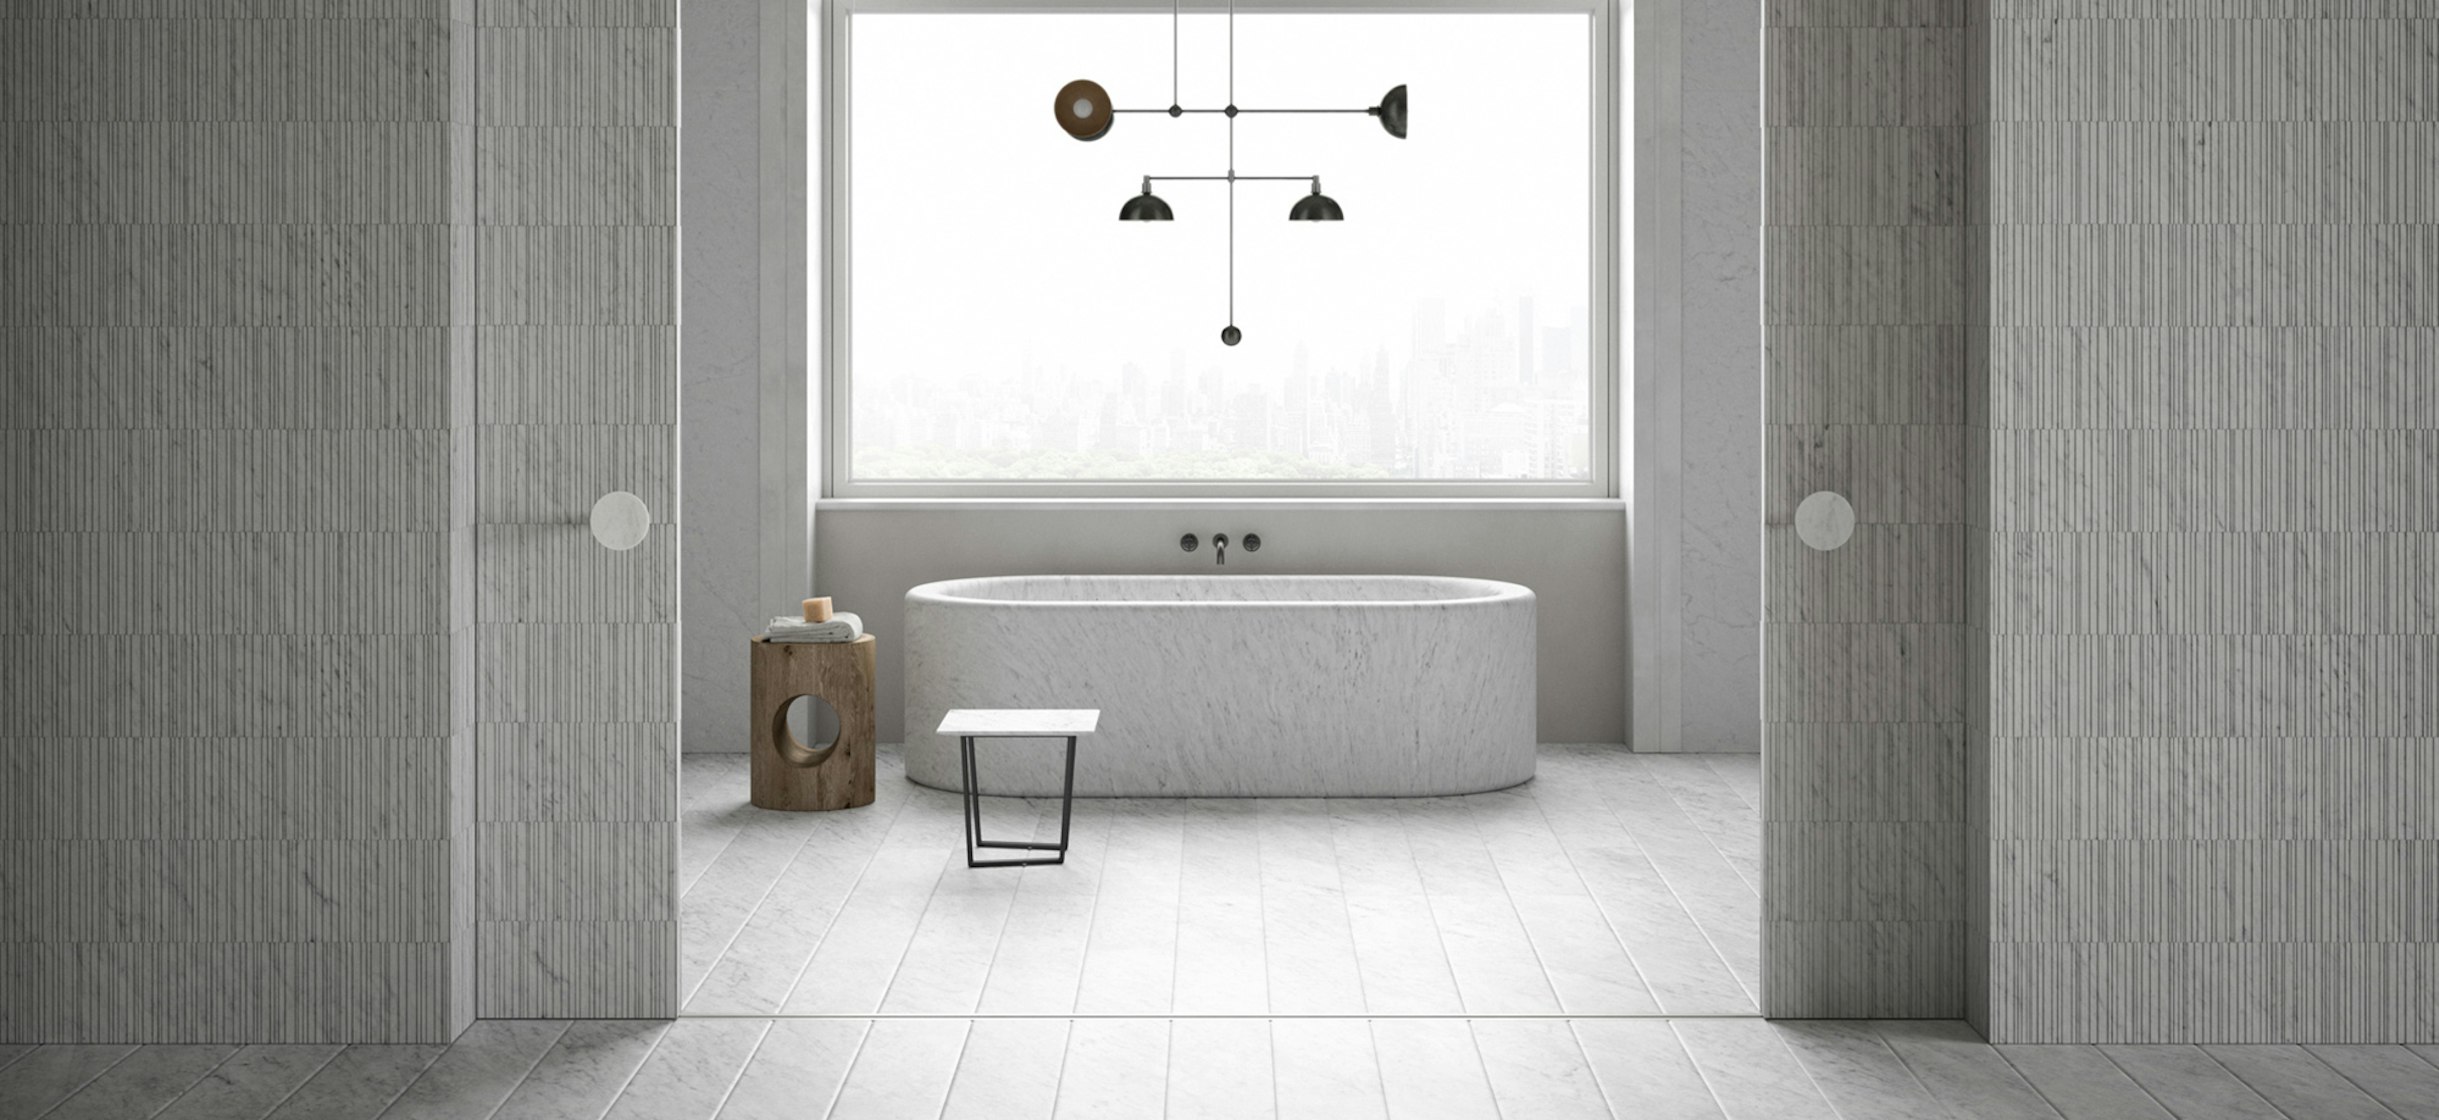 2021-04-banner_stories_bathroom-interior-ideas